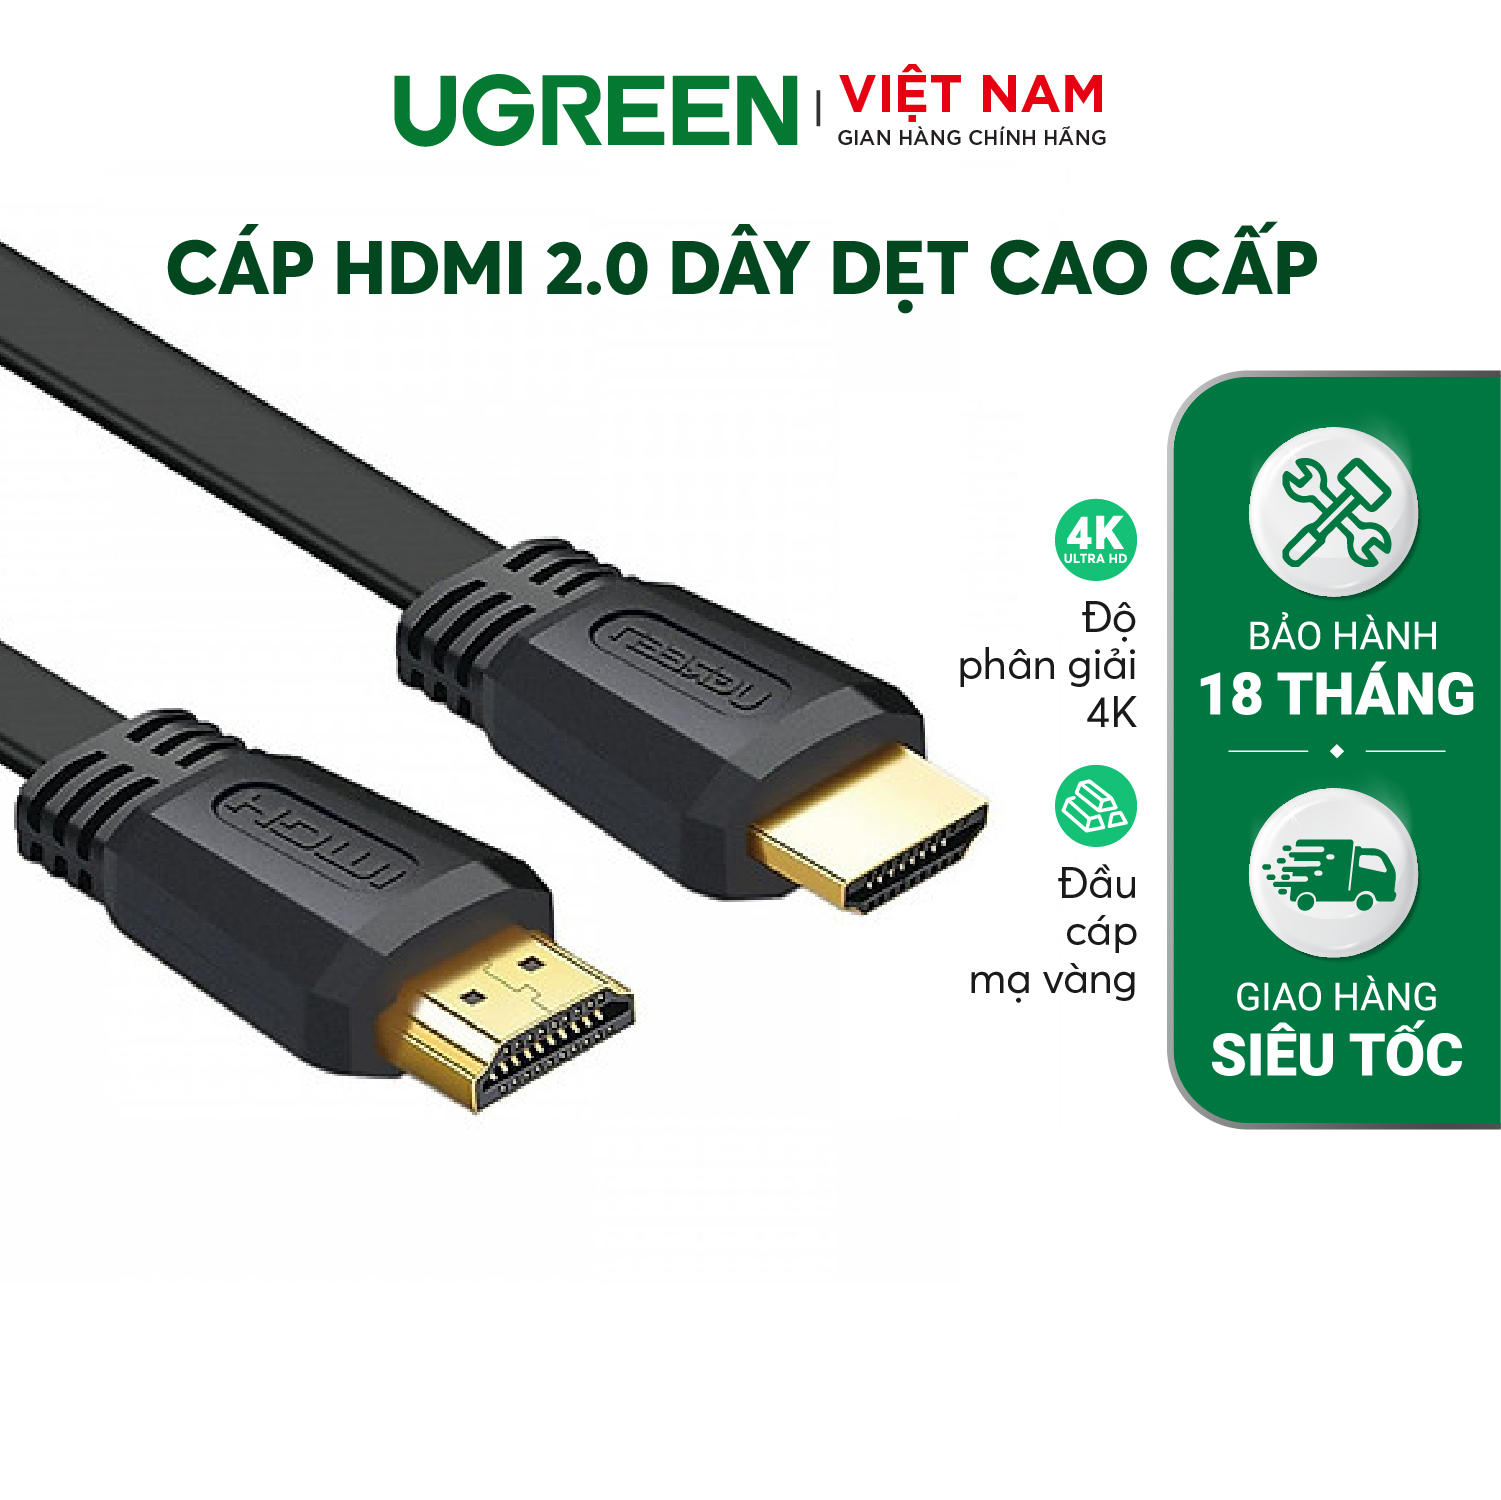 Cáp HDMI 2.0 UGREEN ED015 Hỗ trợ độ phân giải 4Kx2K 3D Full HD1080 dạng